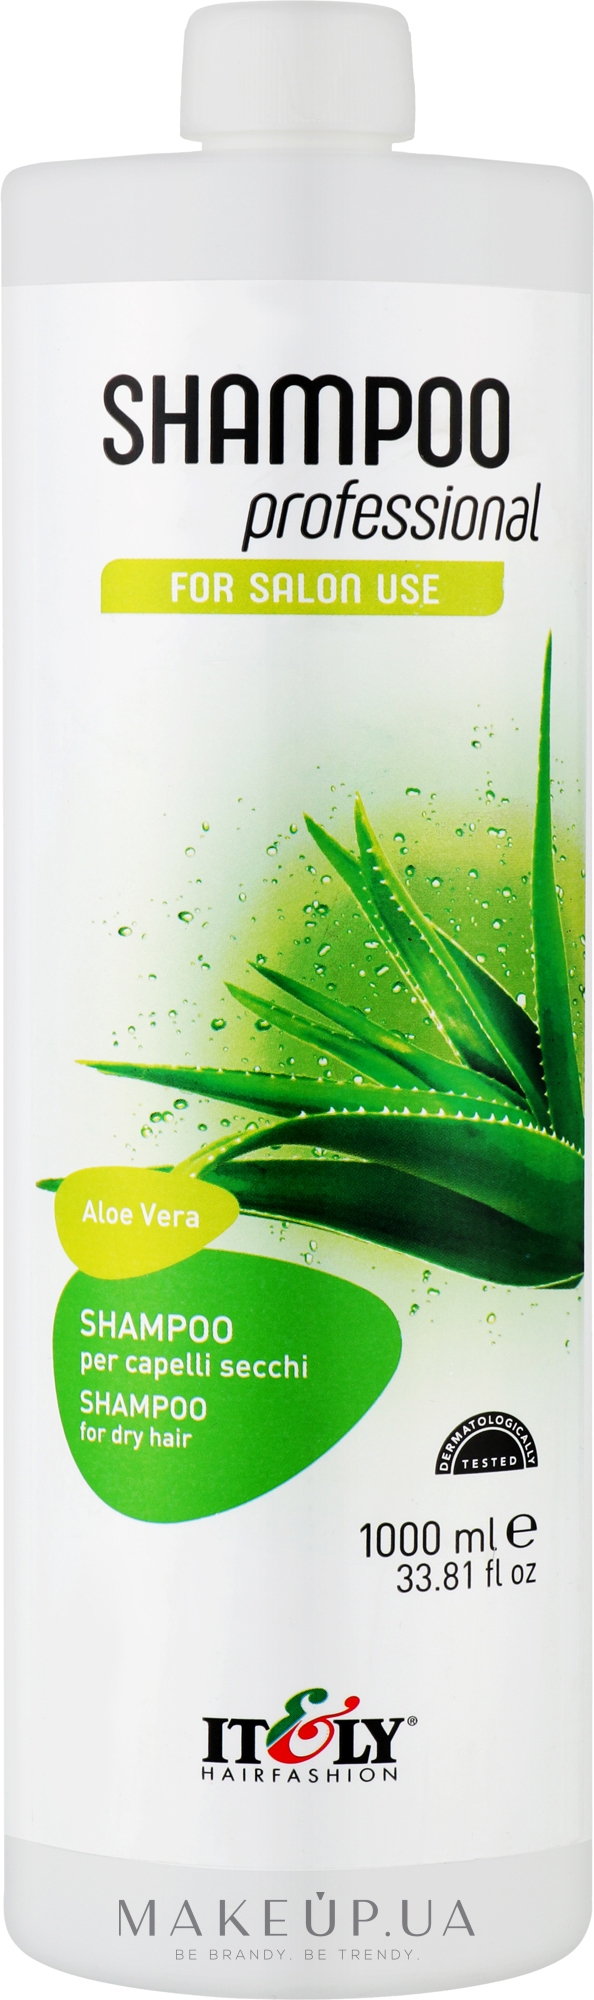 Зволожувальний шампунь для сухого волосся - Itely Hairfashion Shampoo Professional Aloe Vera — фото 1000ml